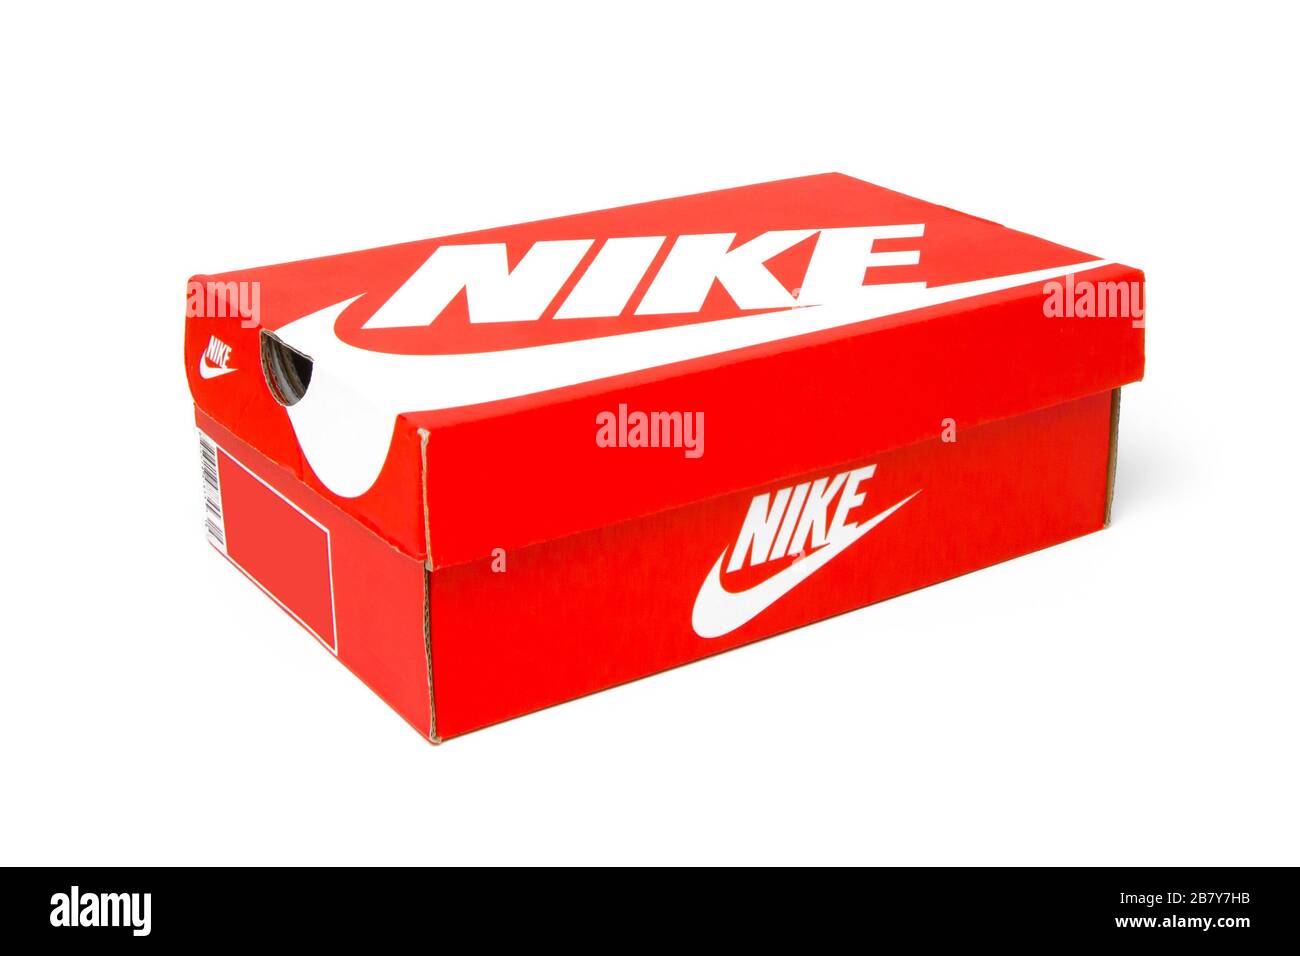 Die Nike Schuhschachtel ist auf weißem Hintergrund isoliert. Rote Box für  Snicker. San Francisco, USA, März 2020 Stockfotografie - Alamy